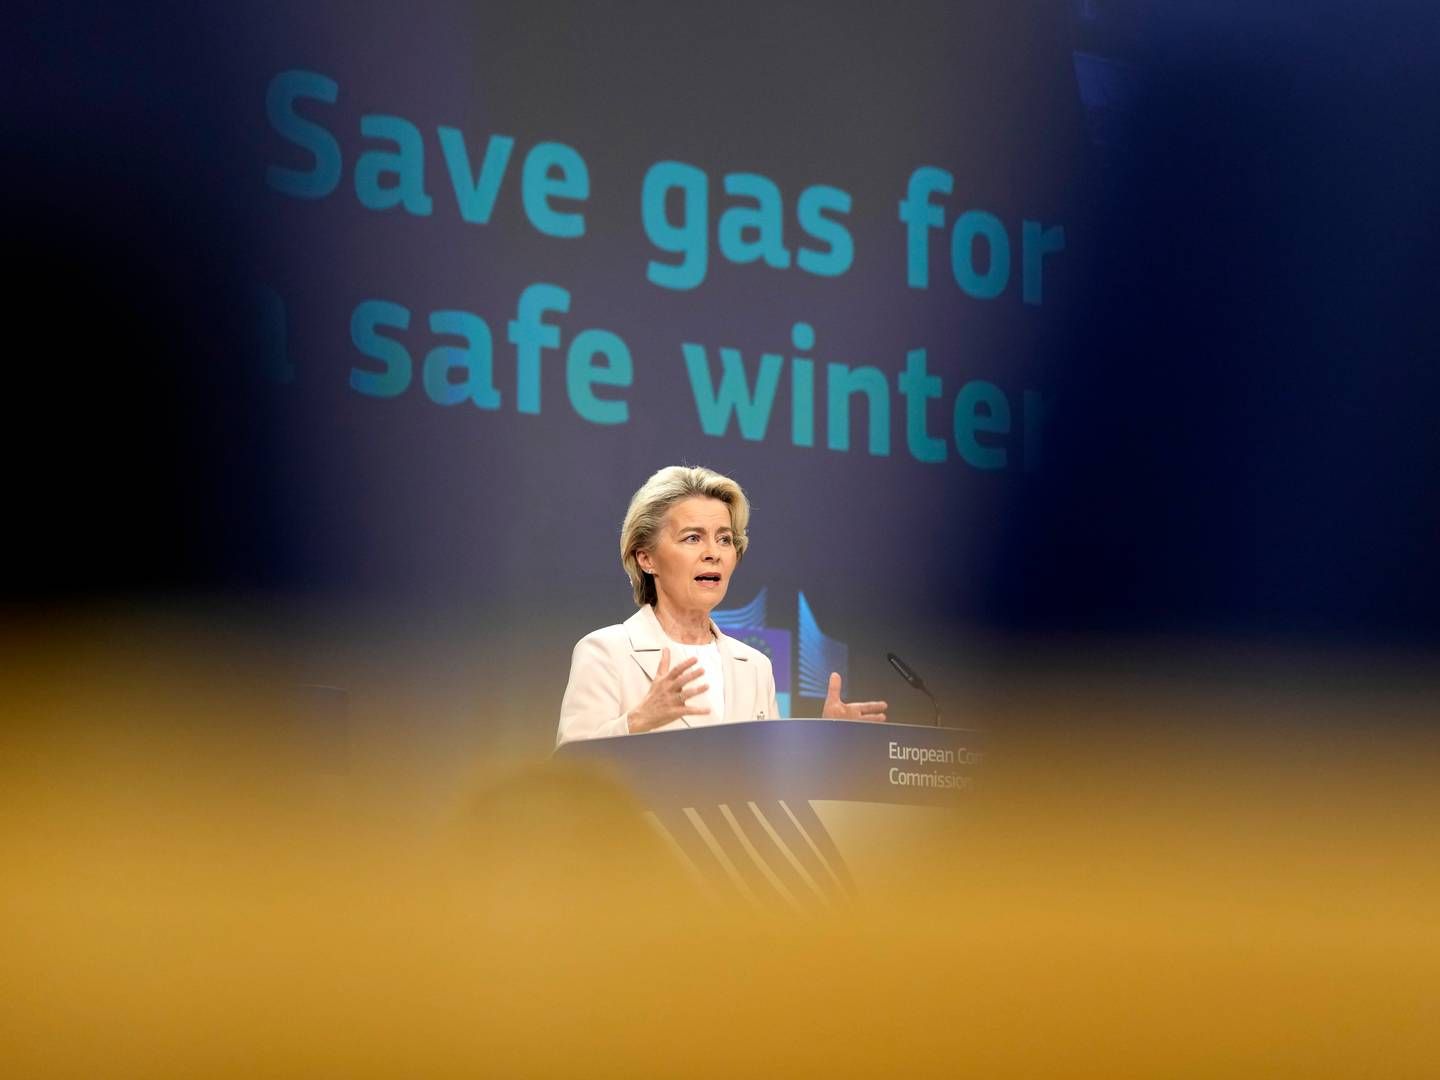 EU-KARTELL: Målet er å forhandle fram bedre gassavtaler. | Foto: AP Photo/Virginia Mayo